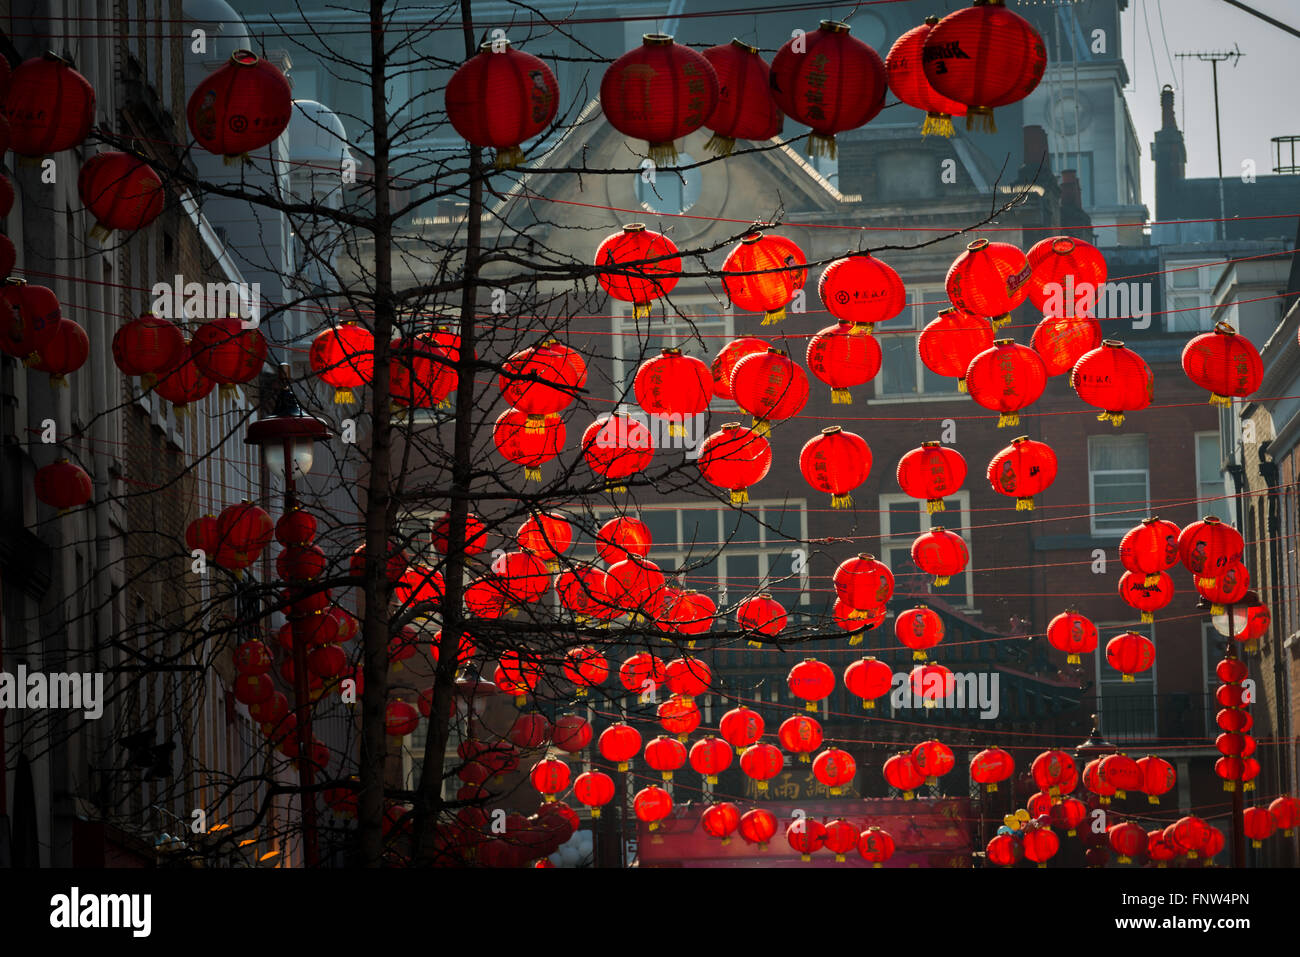 London, Vereinigtes Königreich - 13 März 2016:London Chinatown ist für Chinese New Year mit traditionellen roten Lampions geschmückt. Stockfoto